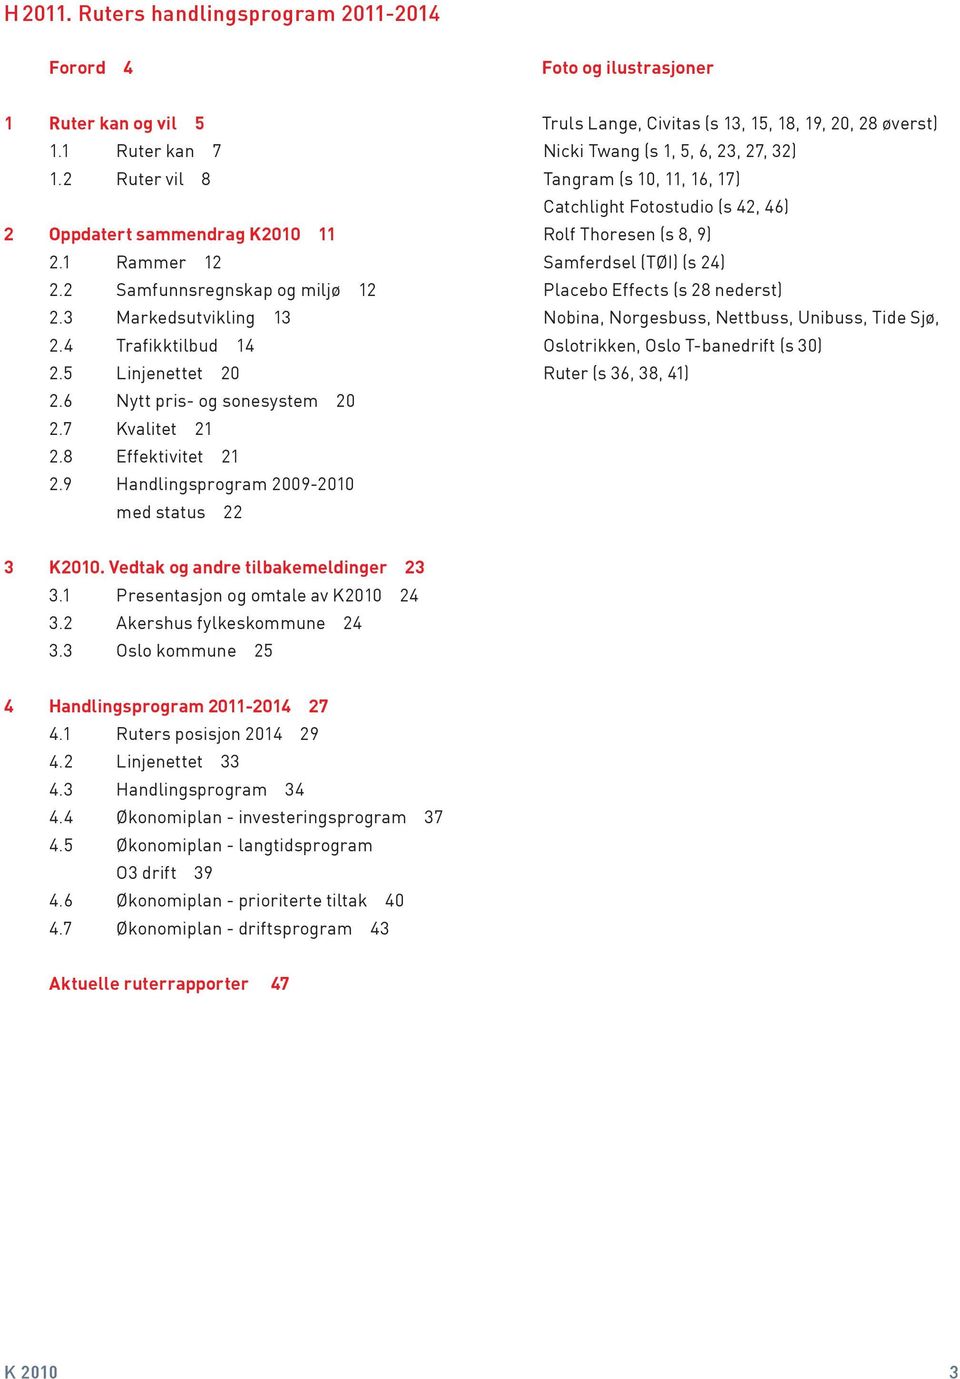 9 Handlingsprogram 2009-2010 med status 22 Truls Lange, Civitas (s 13, 15, 18, 19, 20, 28 øverst) Nicki Twang (s 1, 5, 6, 23, 27, 32) Tangram (s 10, 11, 16, 17) Catchlight Fotostudio (s 42, 46) Rolf